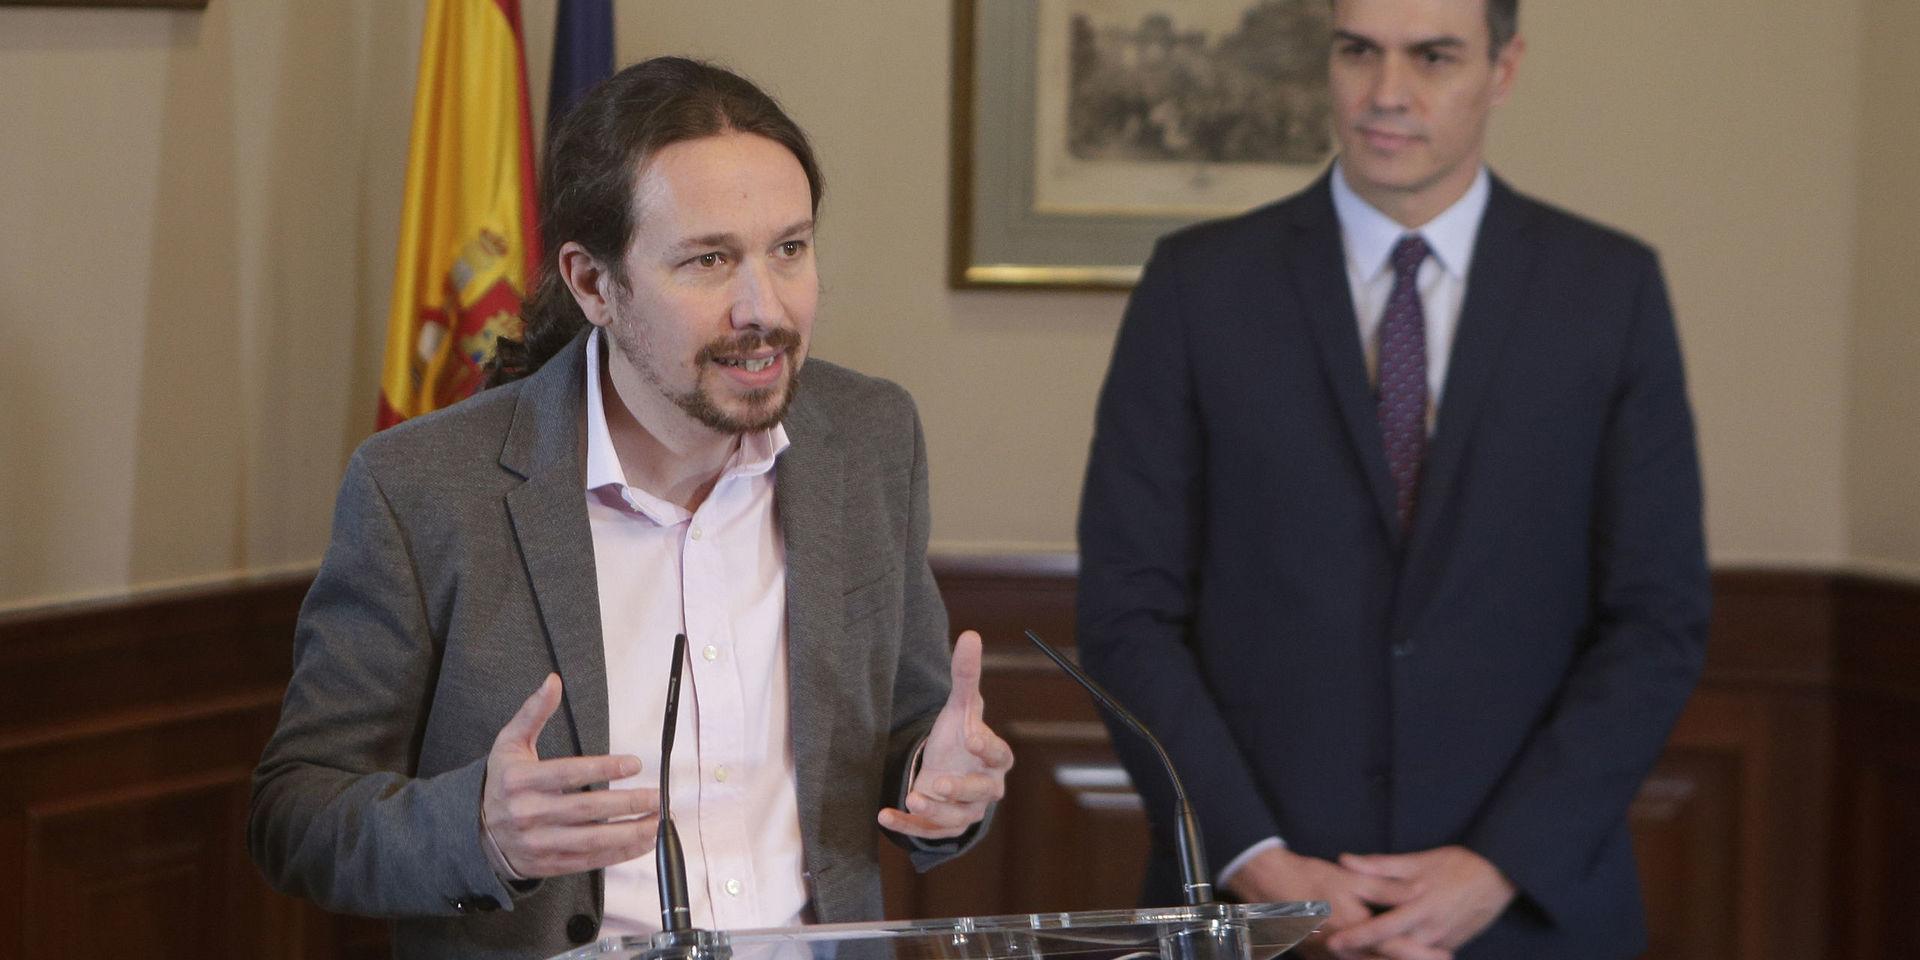 Unidas Podemos-ledaren Pablo Iglesias kallar vänsterpakten 'ett vaccin mot extremhögern'. Tillförordnade premiärministern Pedro Sánchez lyssnar.